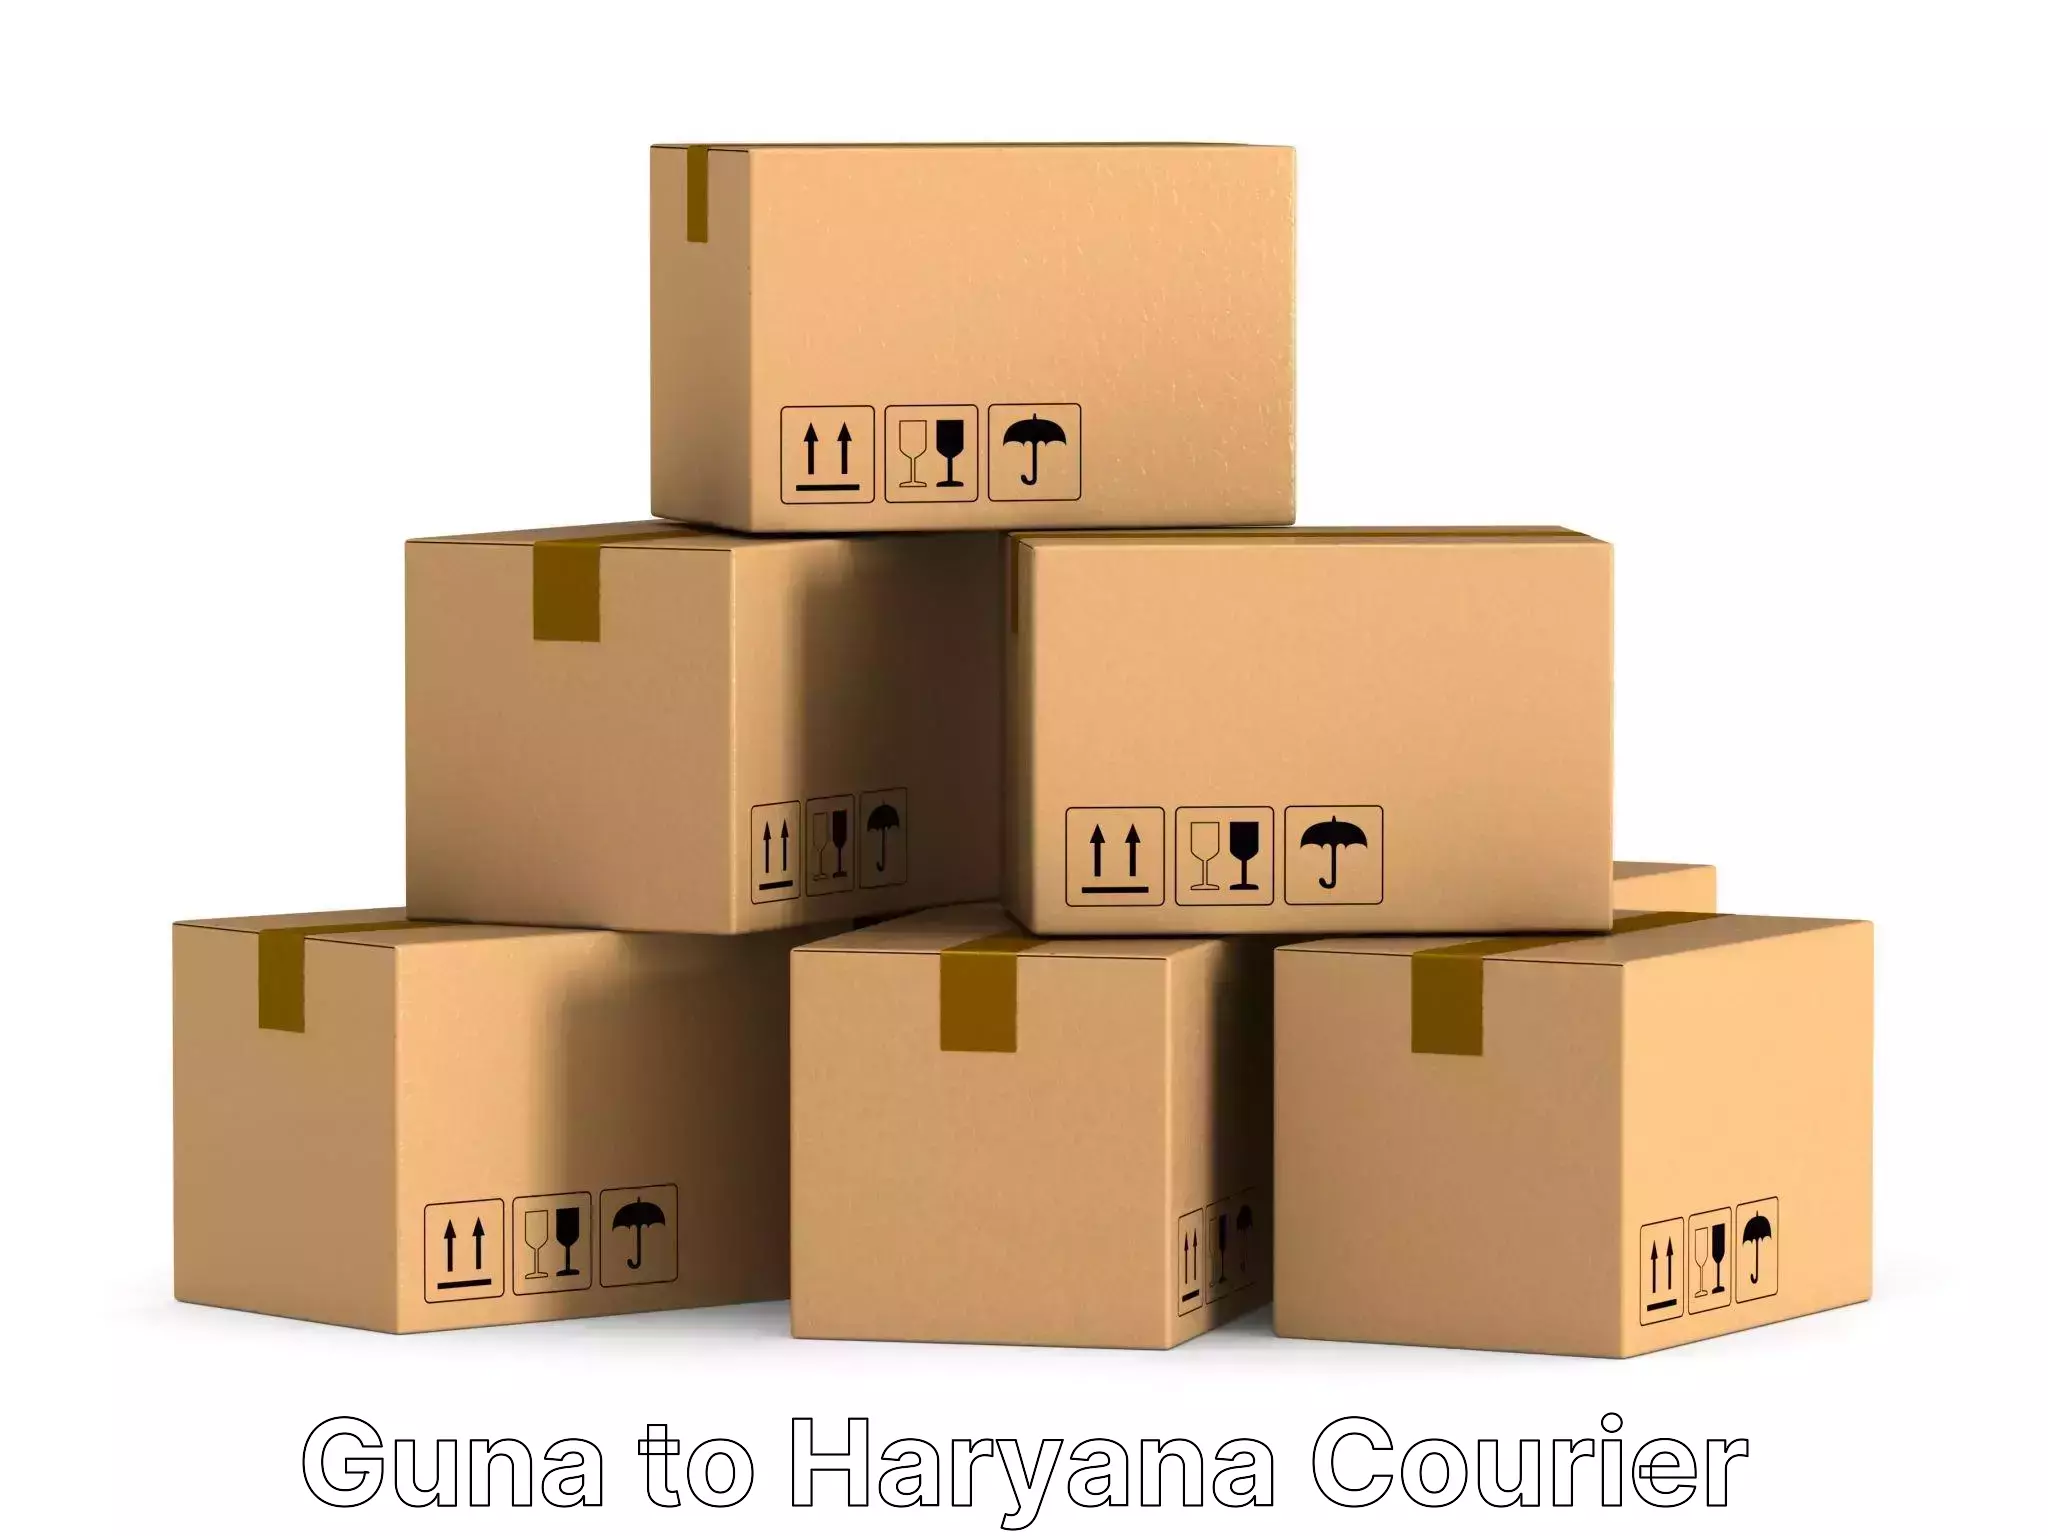 Home moving experts Guna to Narwana